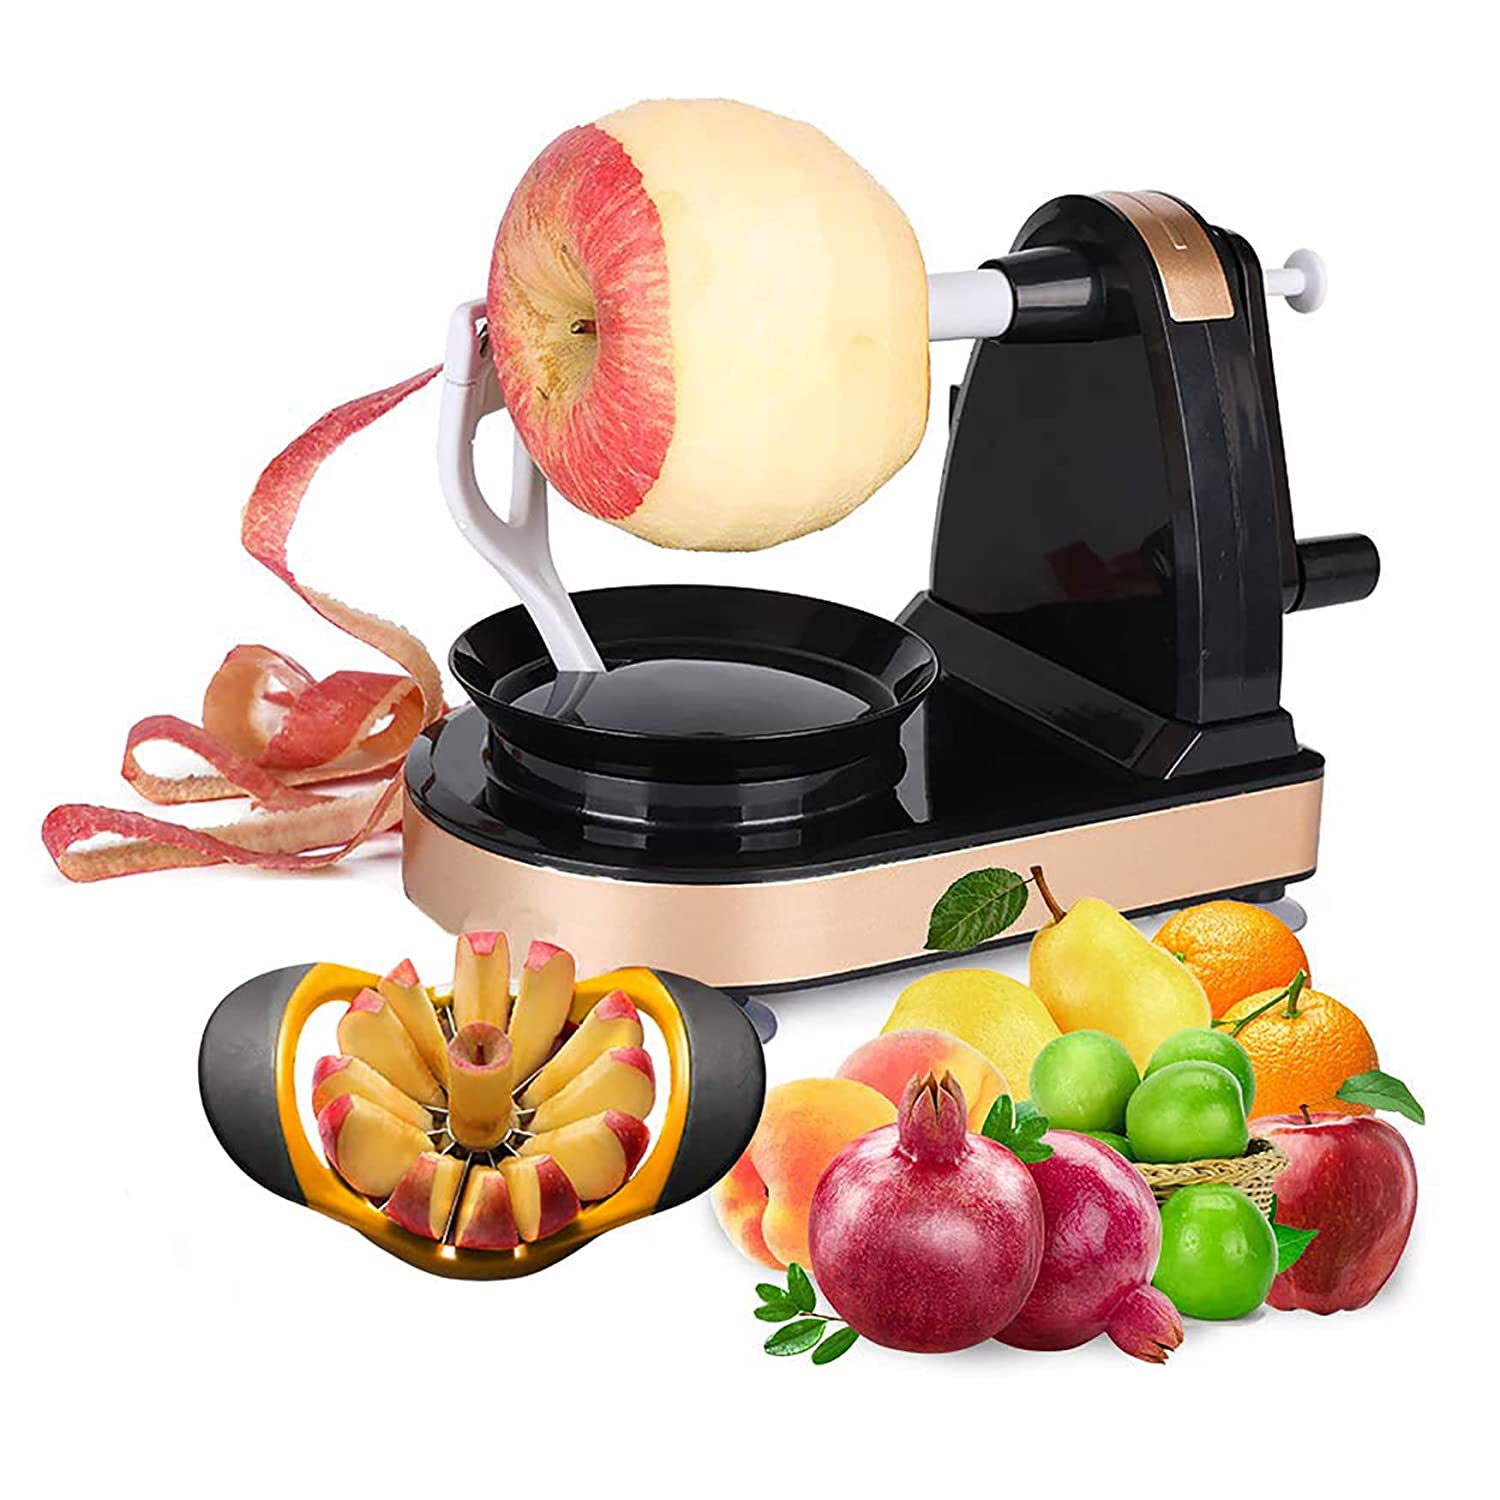 iLife Plastic, Stainless Steel Apple Peeler Slicer Corer Vegetable And Fruit Peelers Slicer, Black & Gold